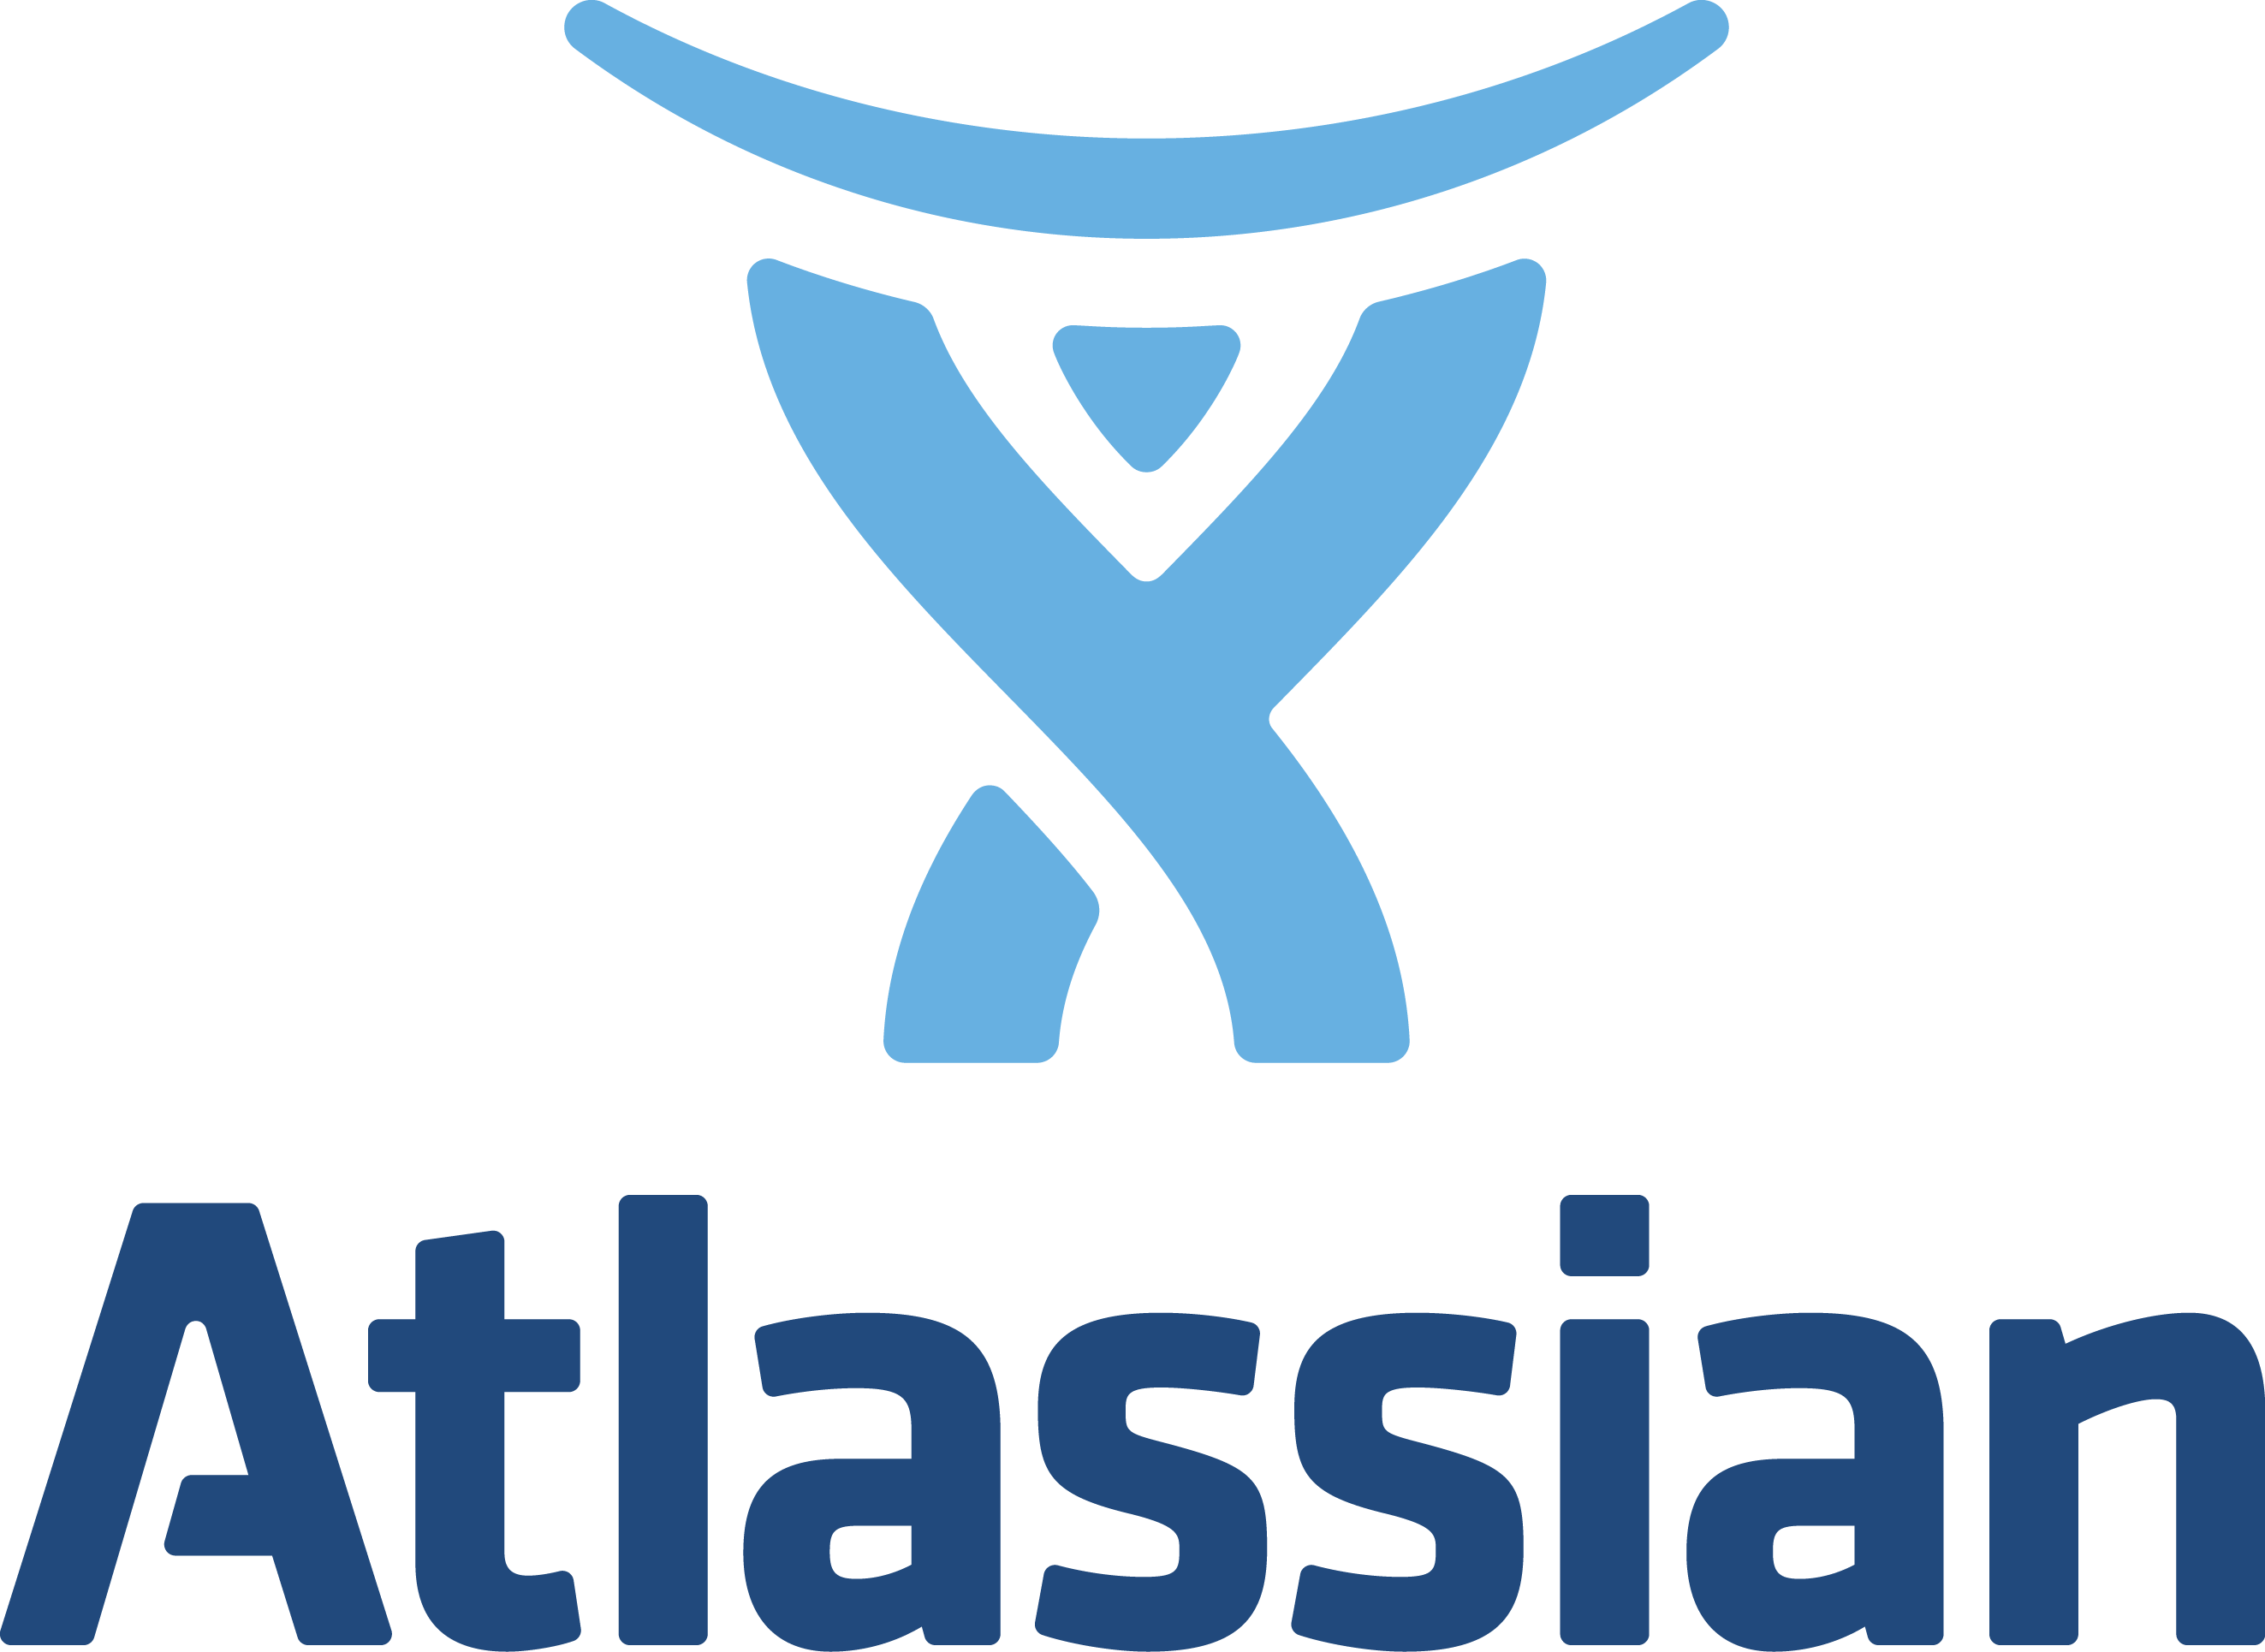 Https atlassian net. Atlassian. Атлассиан лого. Atlassian Jira logo. Atlassian лого PNG.